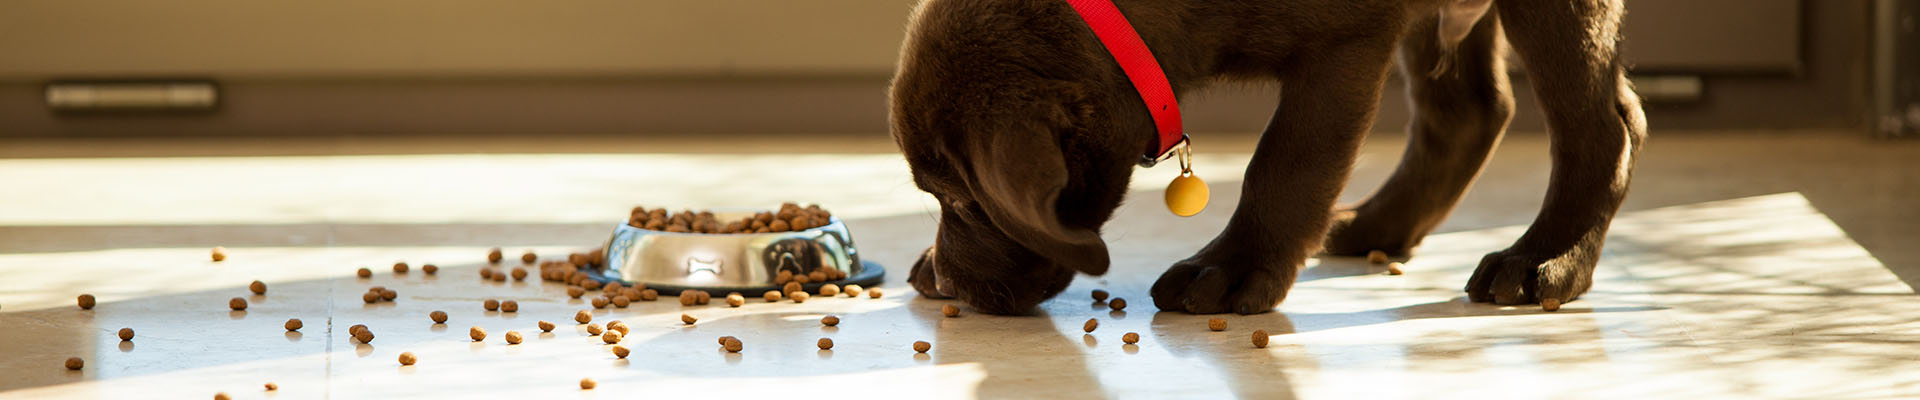 puppy eats spilled dog kibble